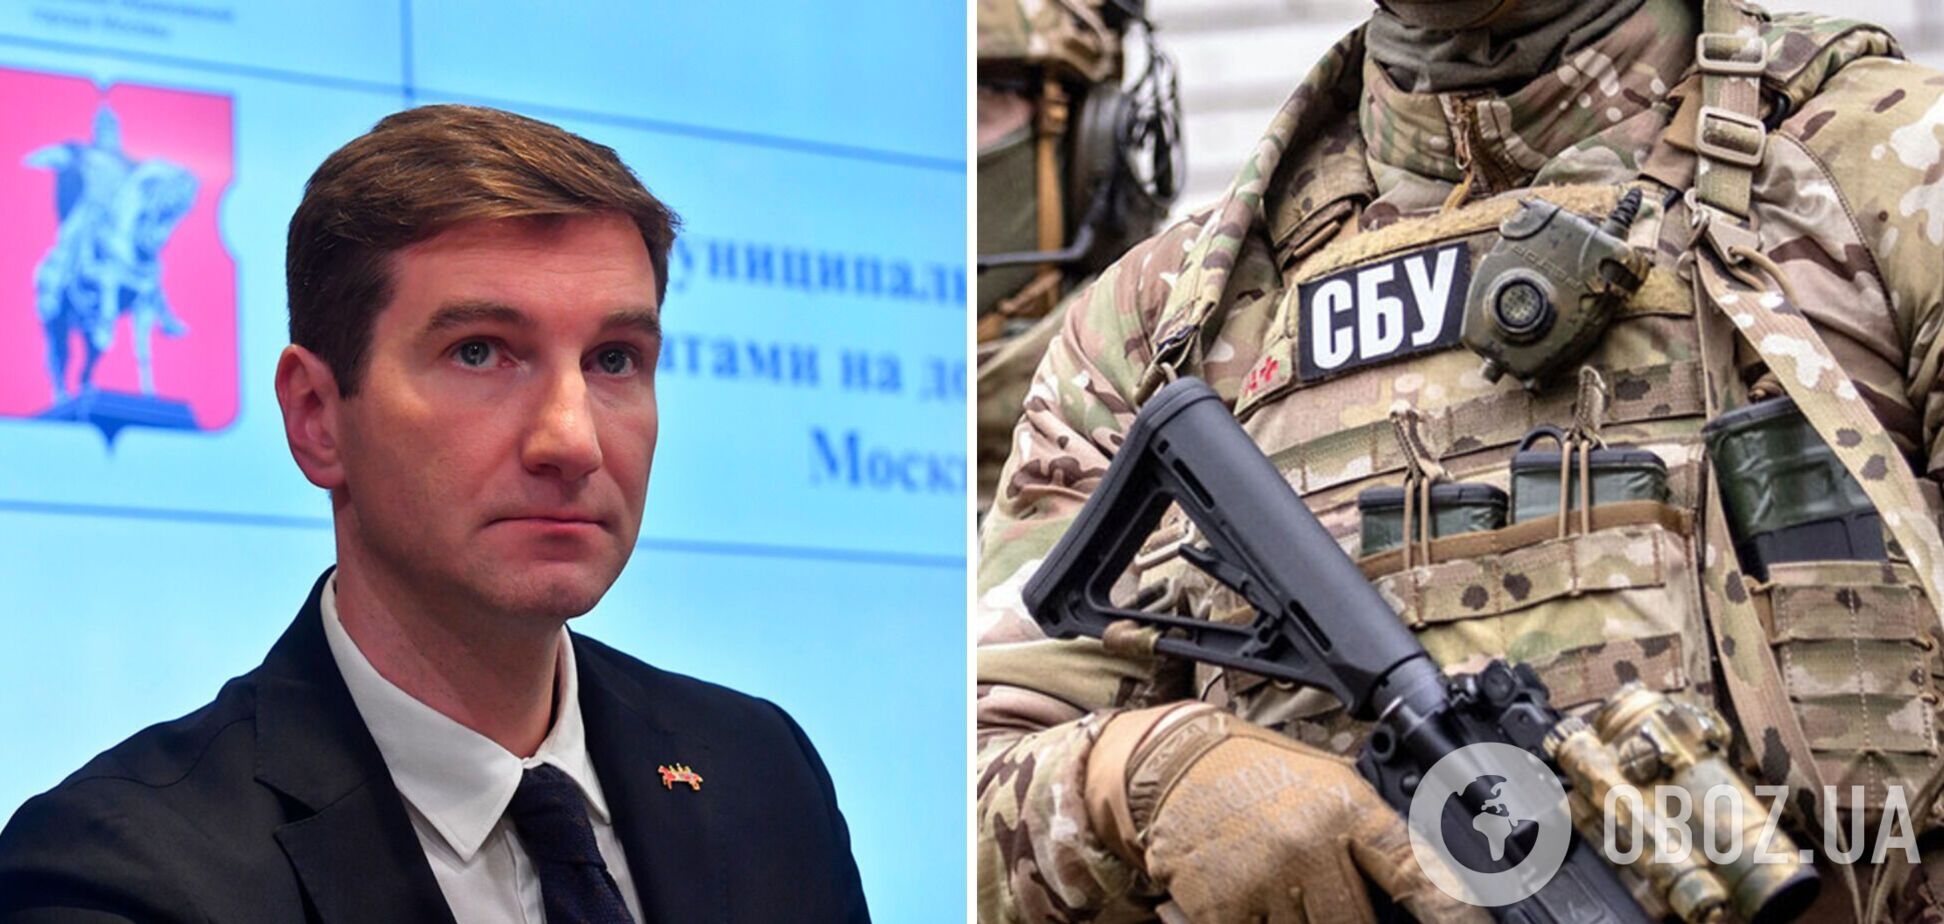 СБУ сообщила о подозрении одному из руководителей Russia Today, который призывал уничтожать украинцев. Фото и видео